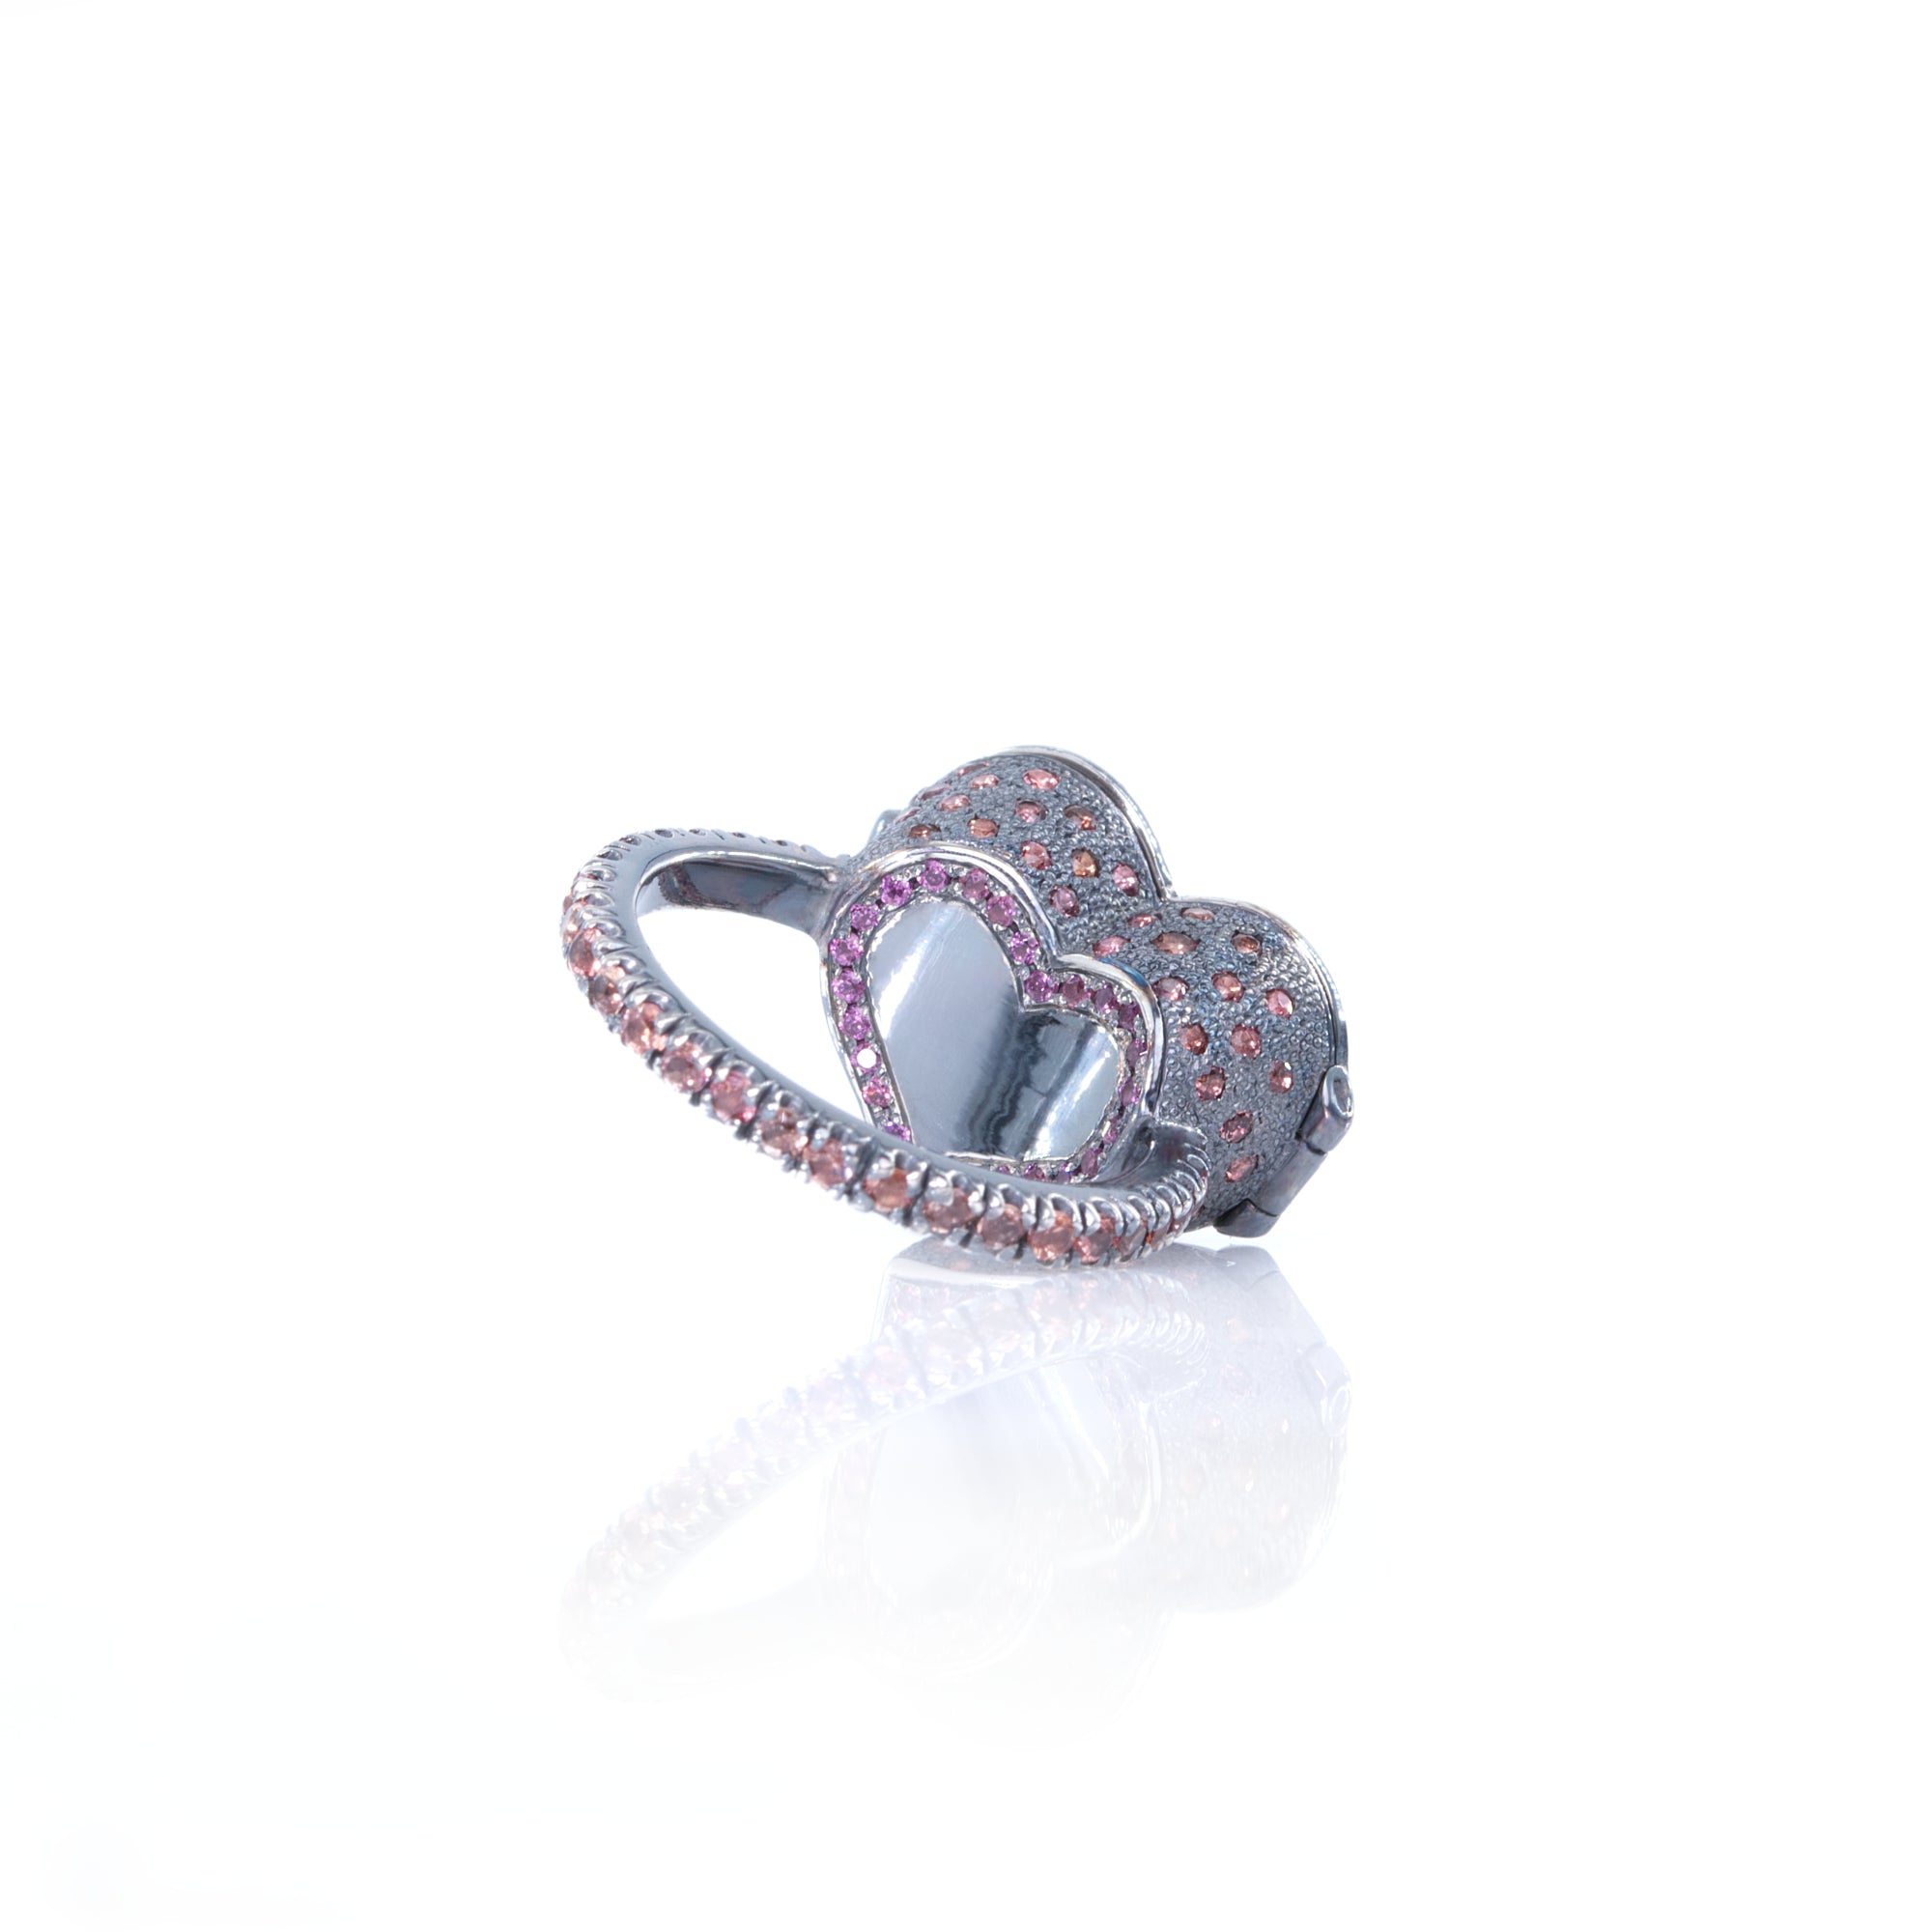 Hidden Secret Heart Locket Ring, Sterling Silver  & Sapphires by Ewa Z. Sleziona Jewellery